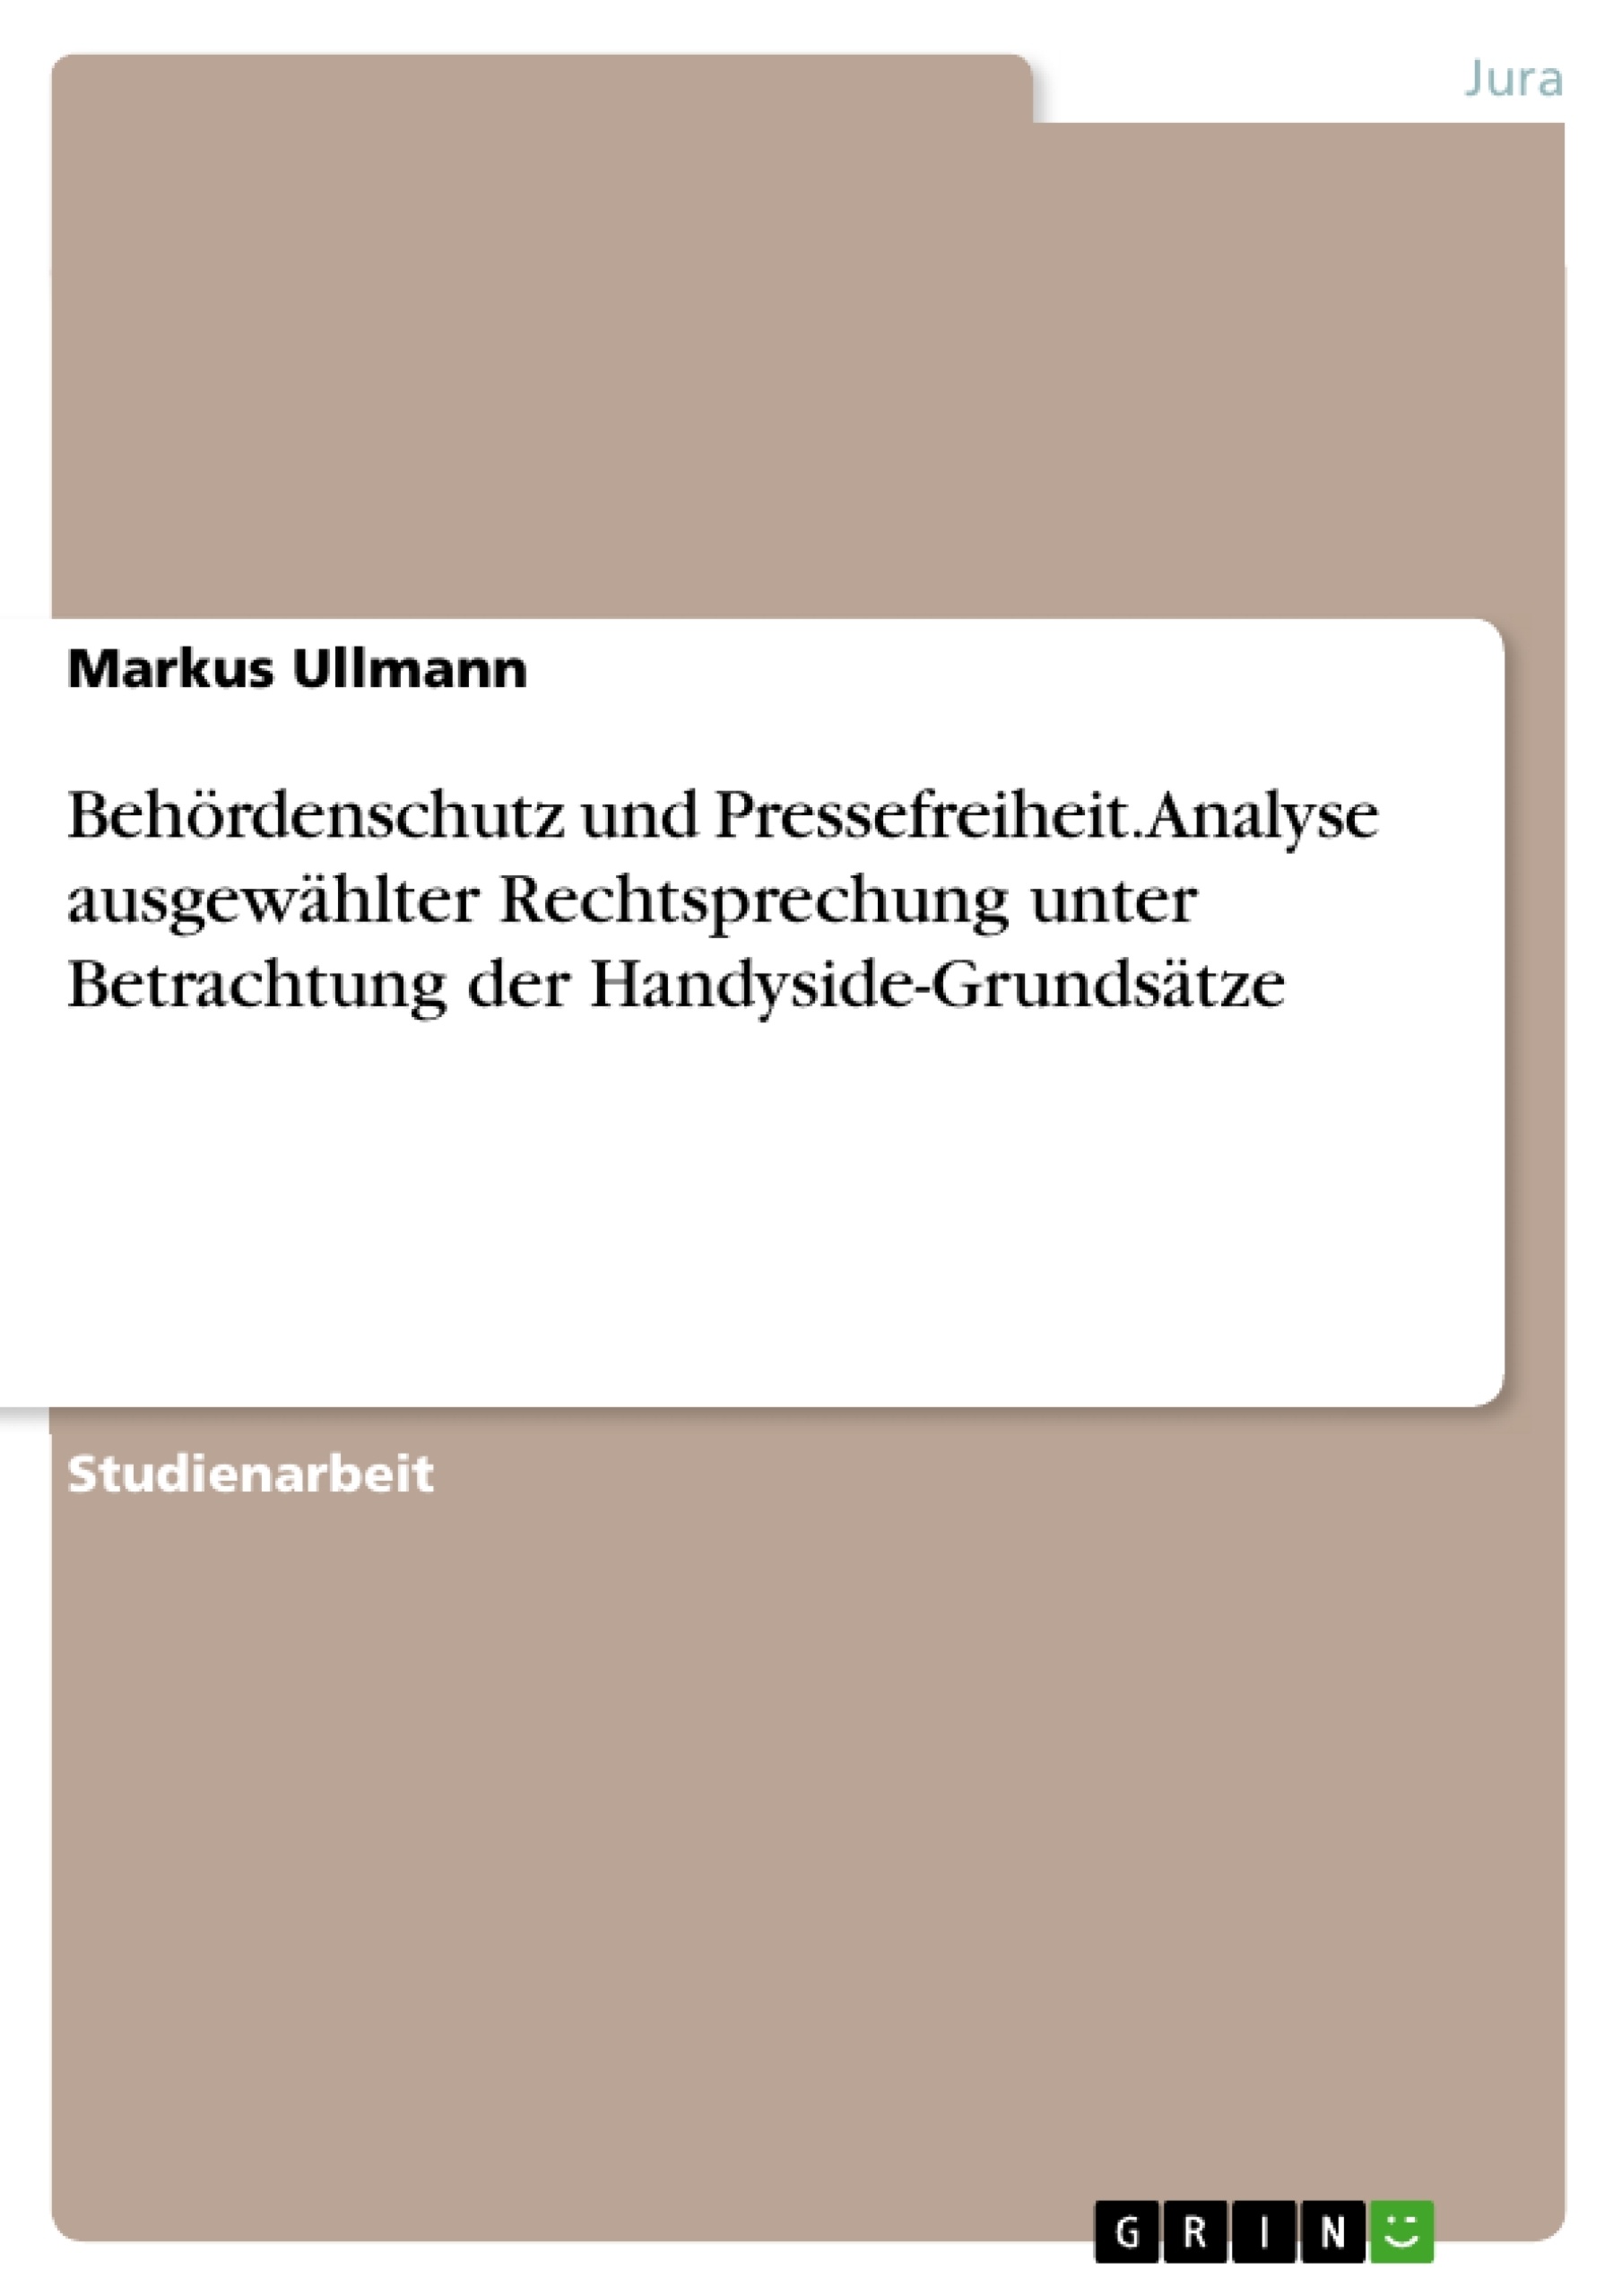 Title: Behördenschutz und Pressefreiheit. Analyse ausgewählter Rechtsprechung unter Betrachtung der Handyside-Grundsätze